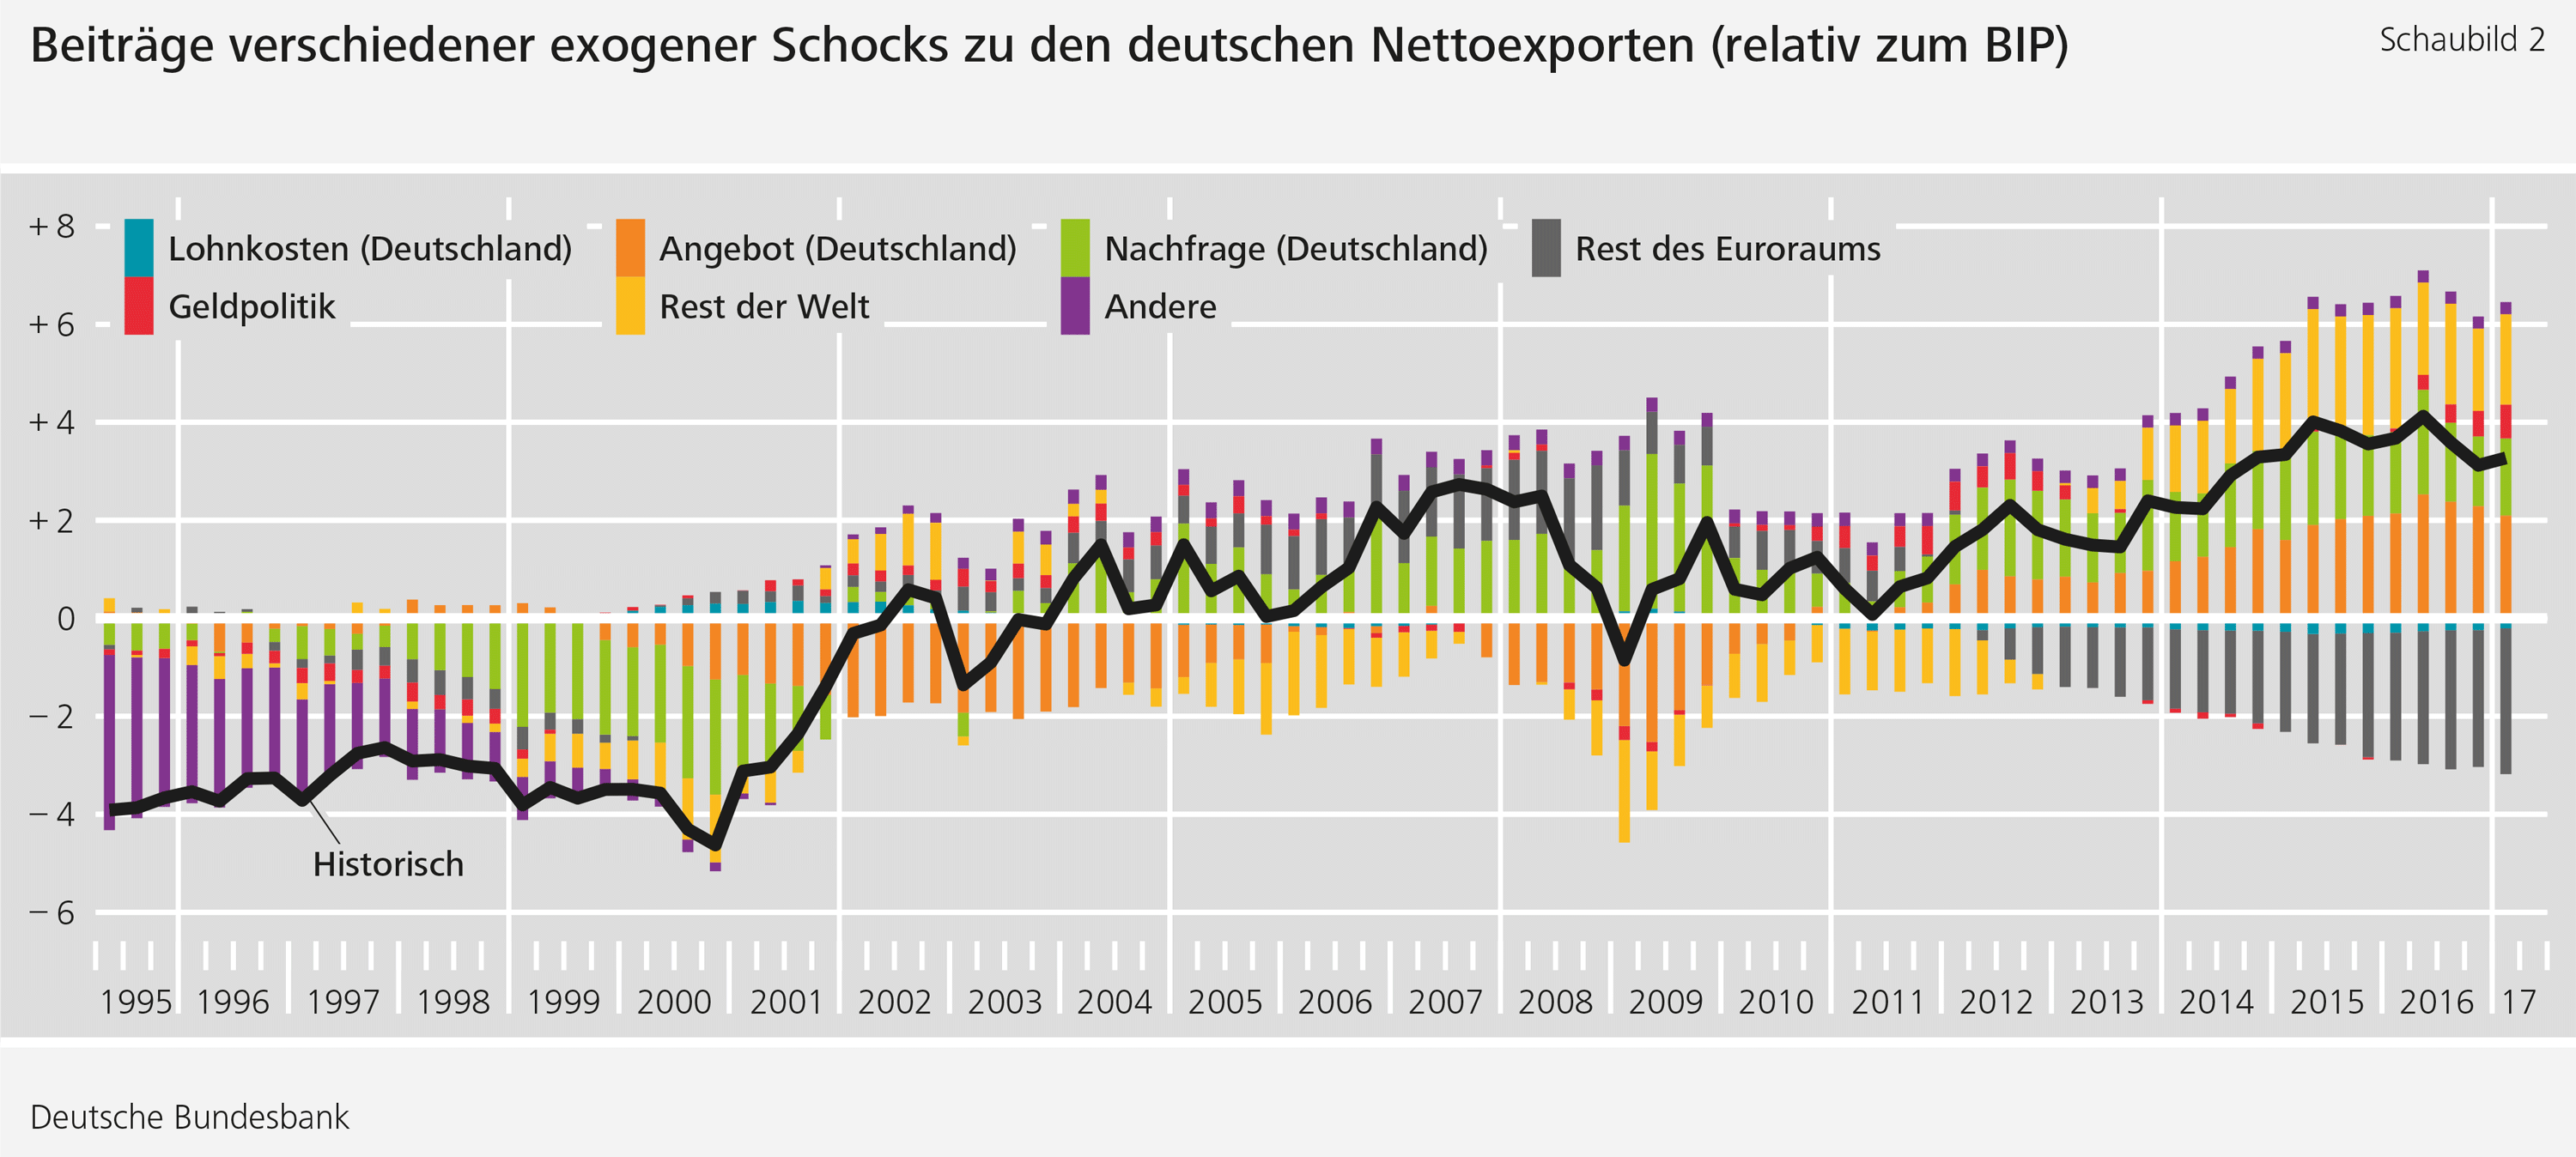 Abbildung 2: Beiträge verschiedener exogener Schocks zu den deutschen Nettoexporten (relativ zum BIP)